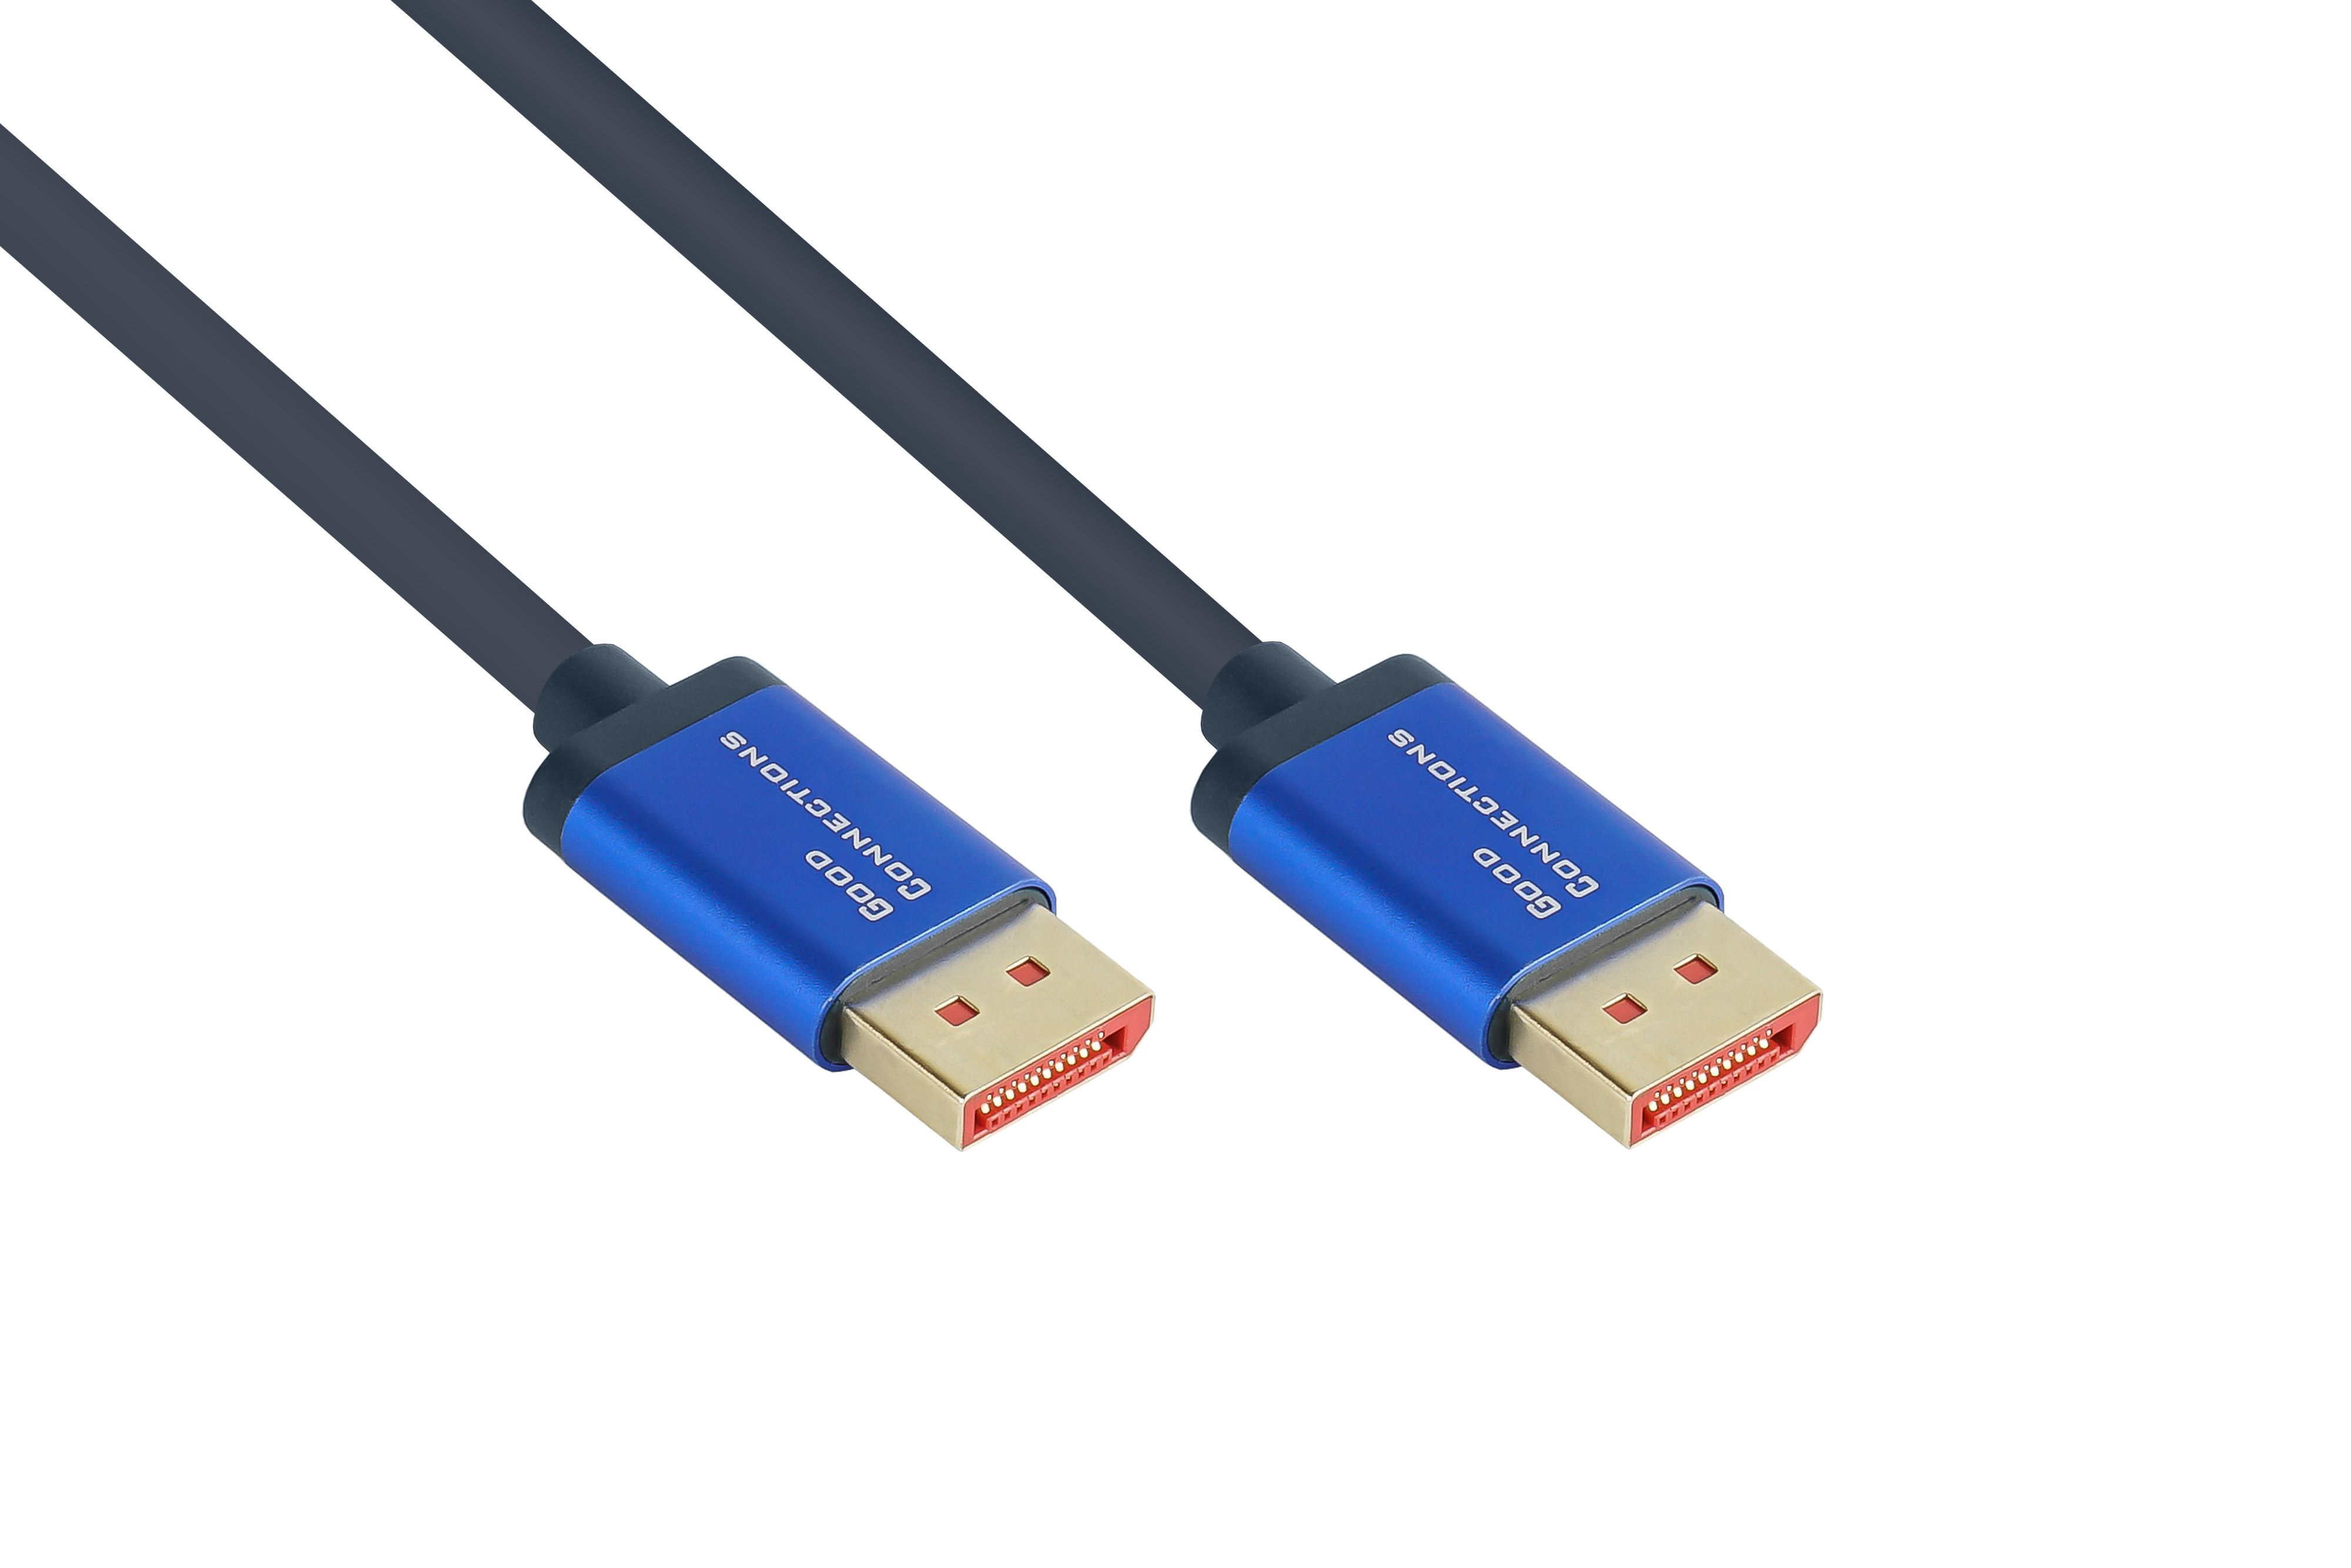 GOOD CONNECTIONS 1.4 SmartFLEX Kabel, 2 / dunkelblau, m UHD, Aluminiumgehäuse, Displayport, 4K 2m, CU, UHD-2 8K